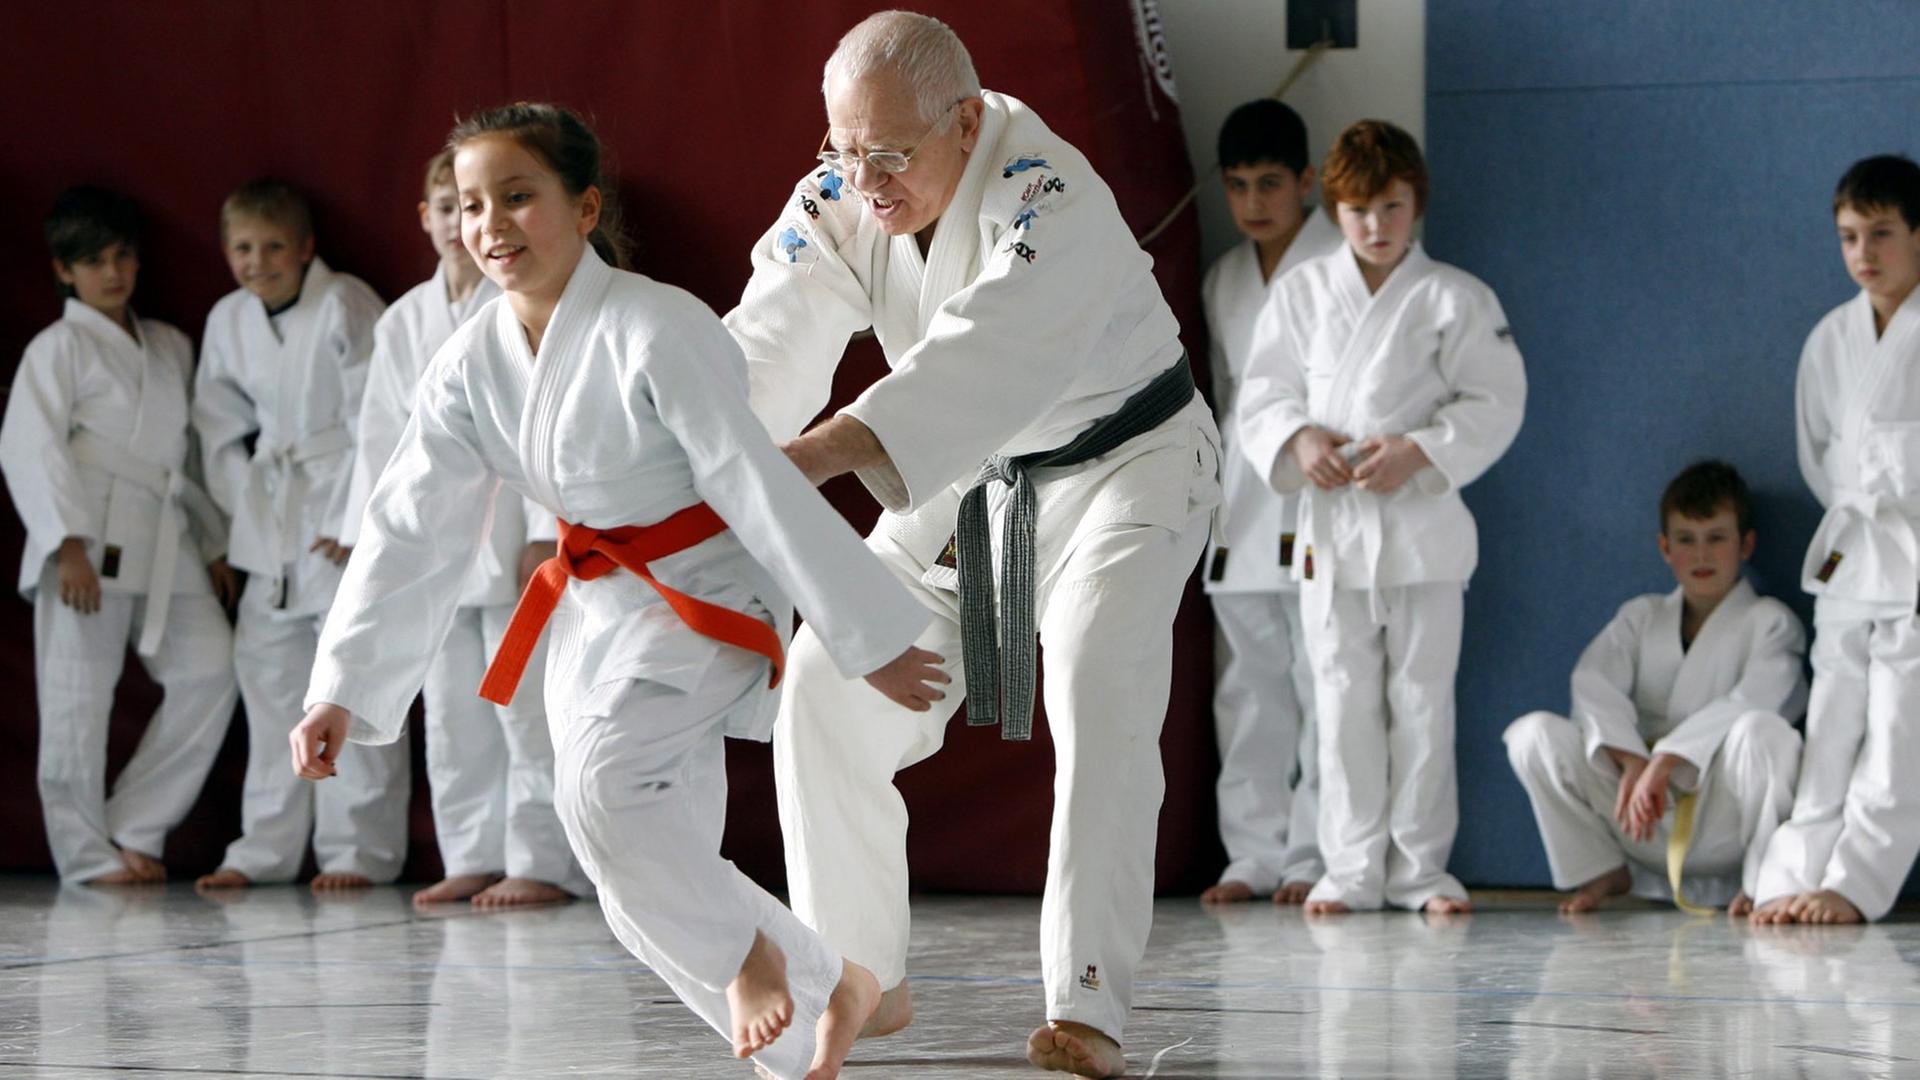 Eine Schülerin zieht während des Judo Unterrichts ihren Lehrer über die Judomatte